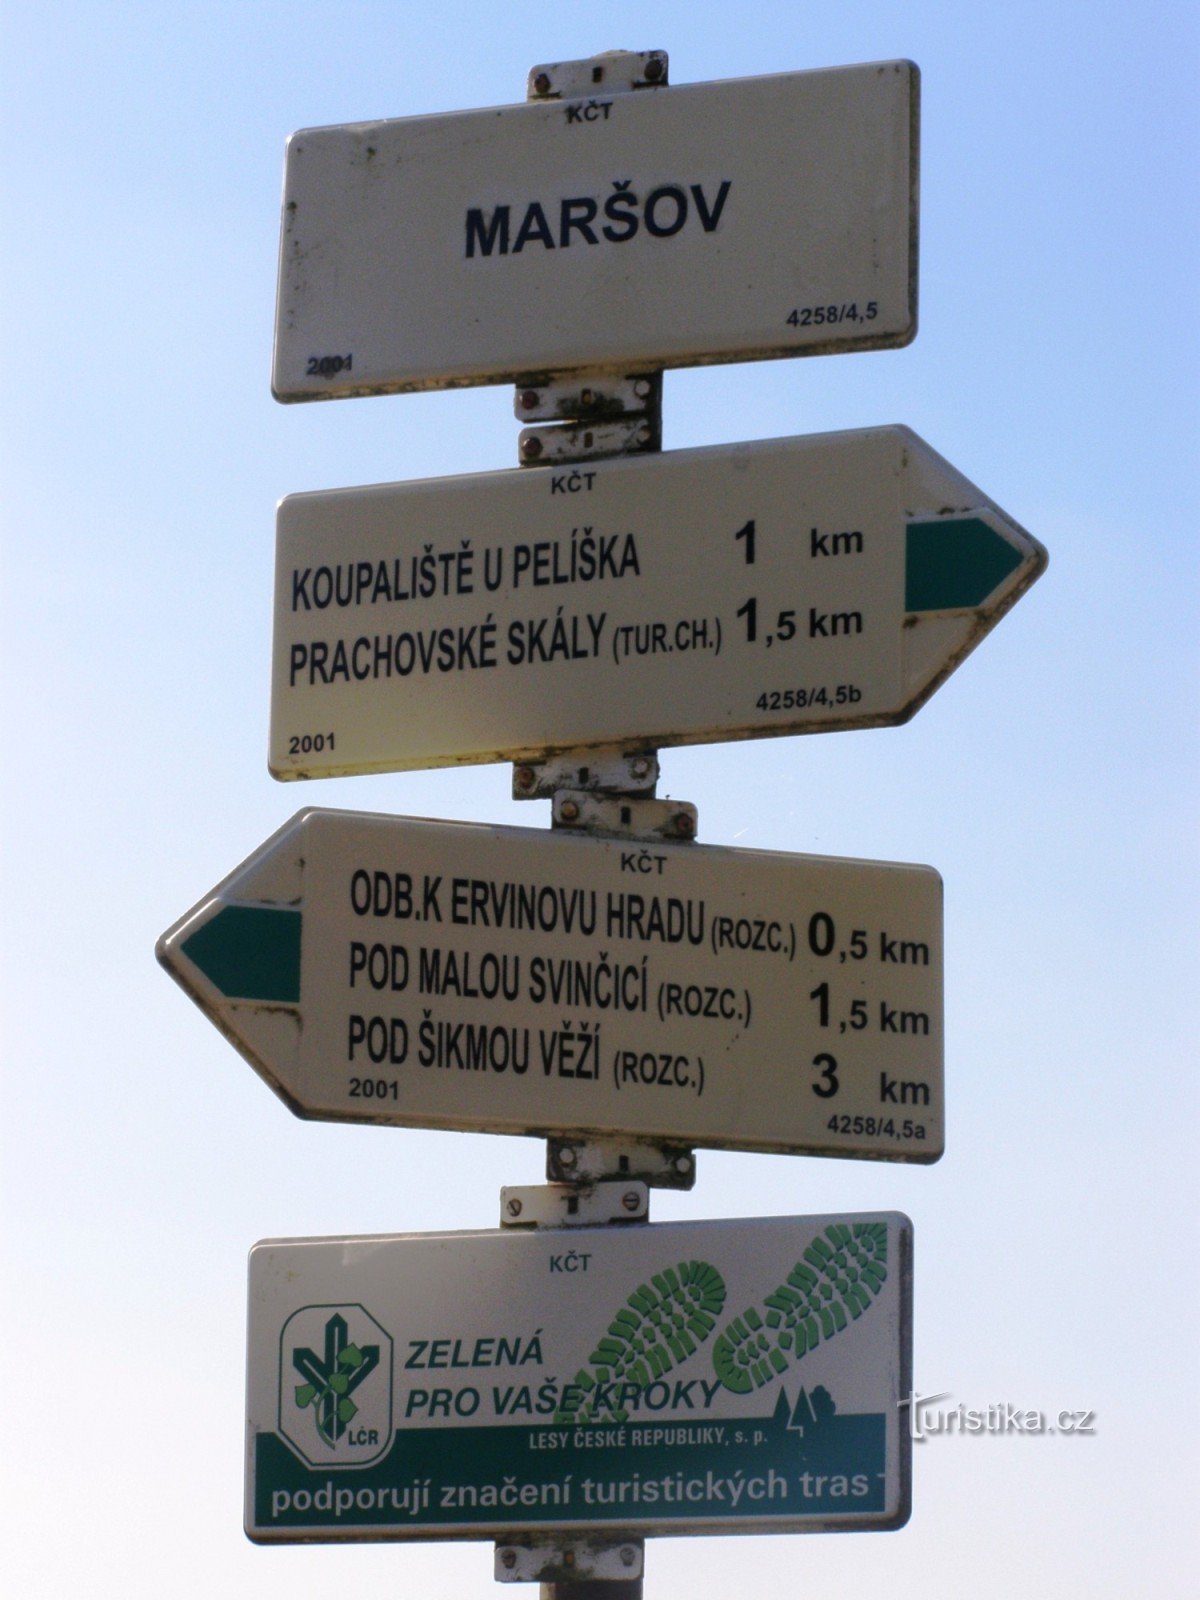 Prachovské skály - tourist crossroads Maršov